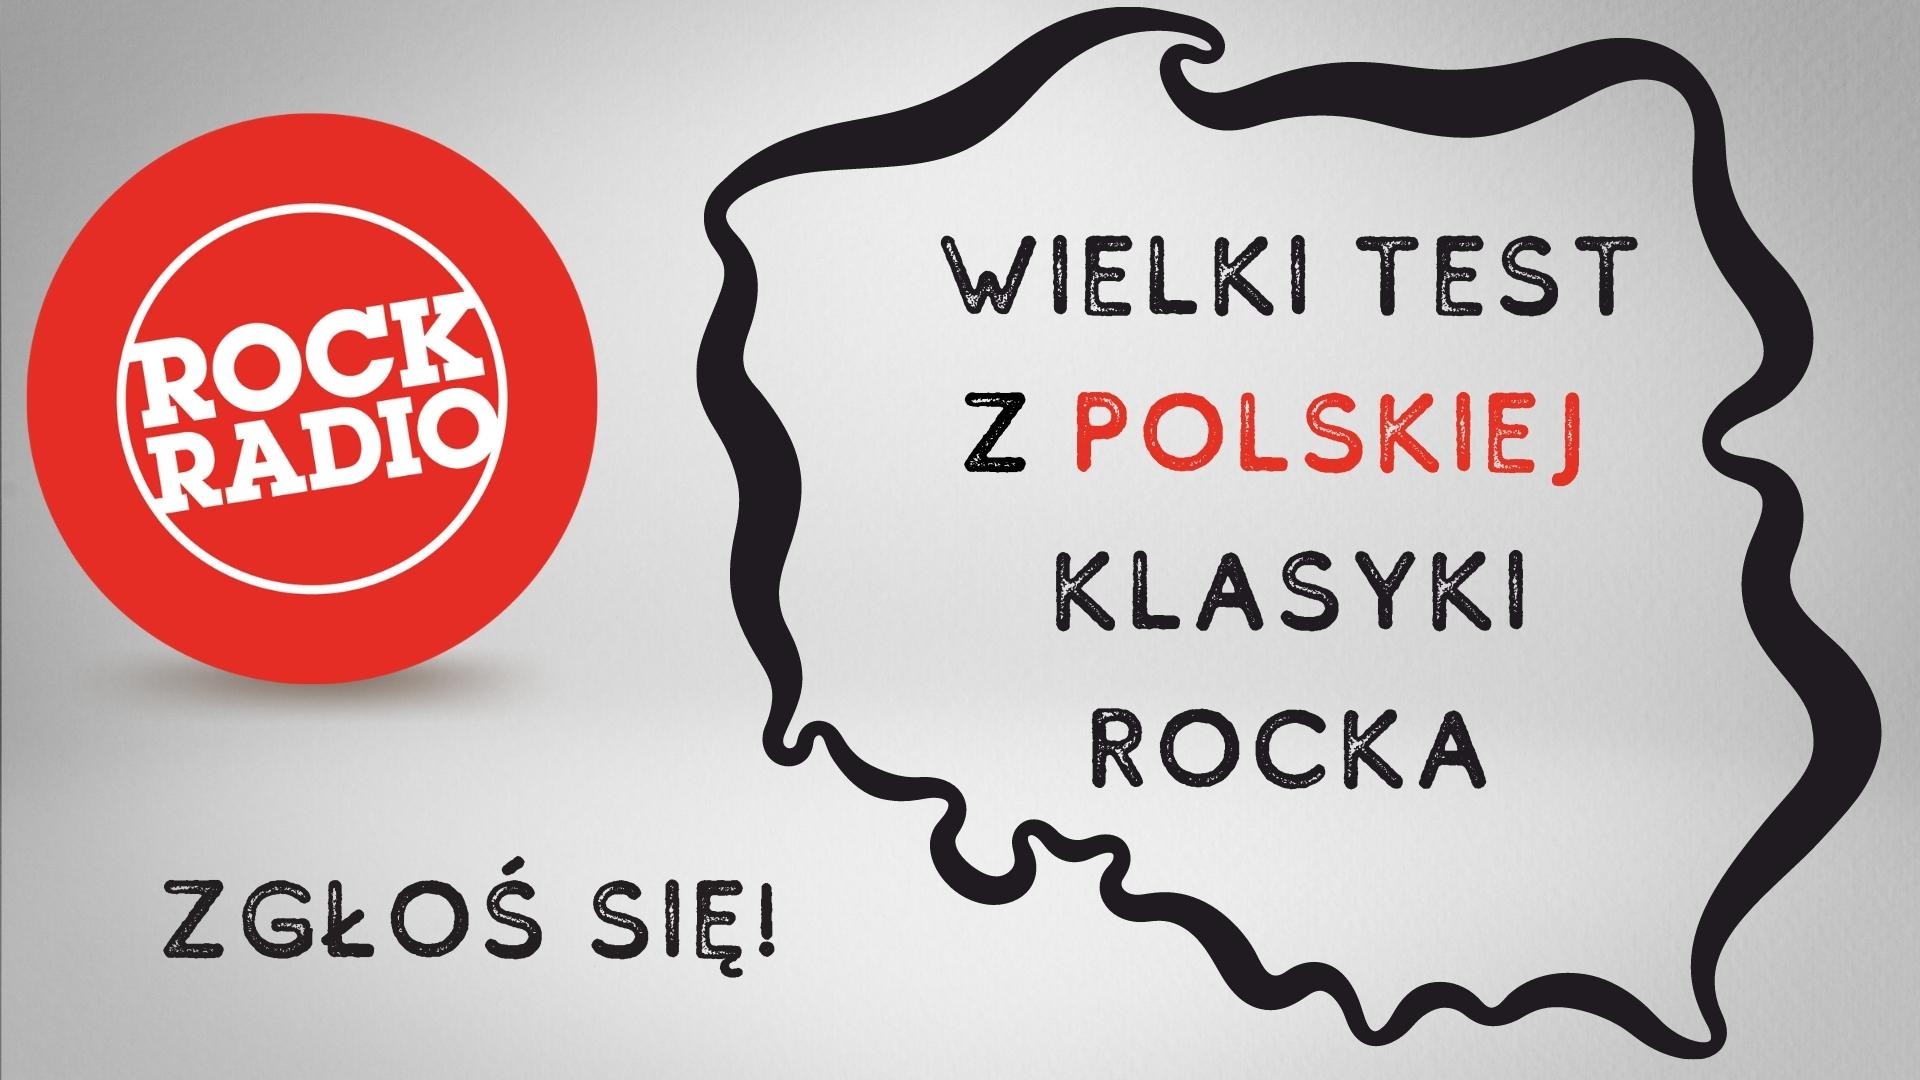 Wielki Test z polskiej klasyki rocka już 11 listopada w Rock Radiu